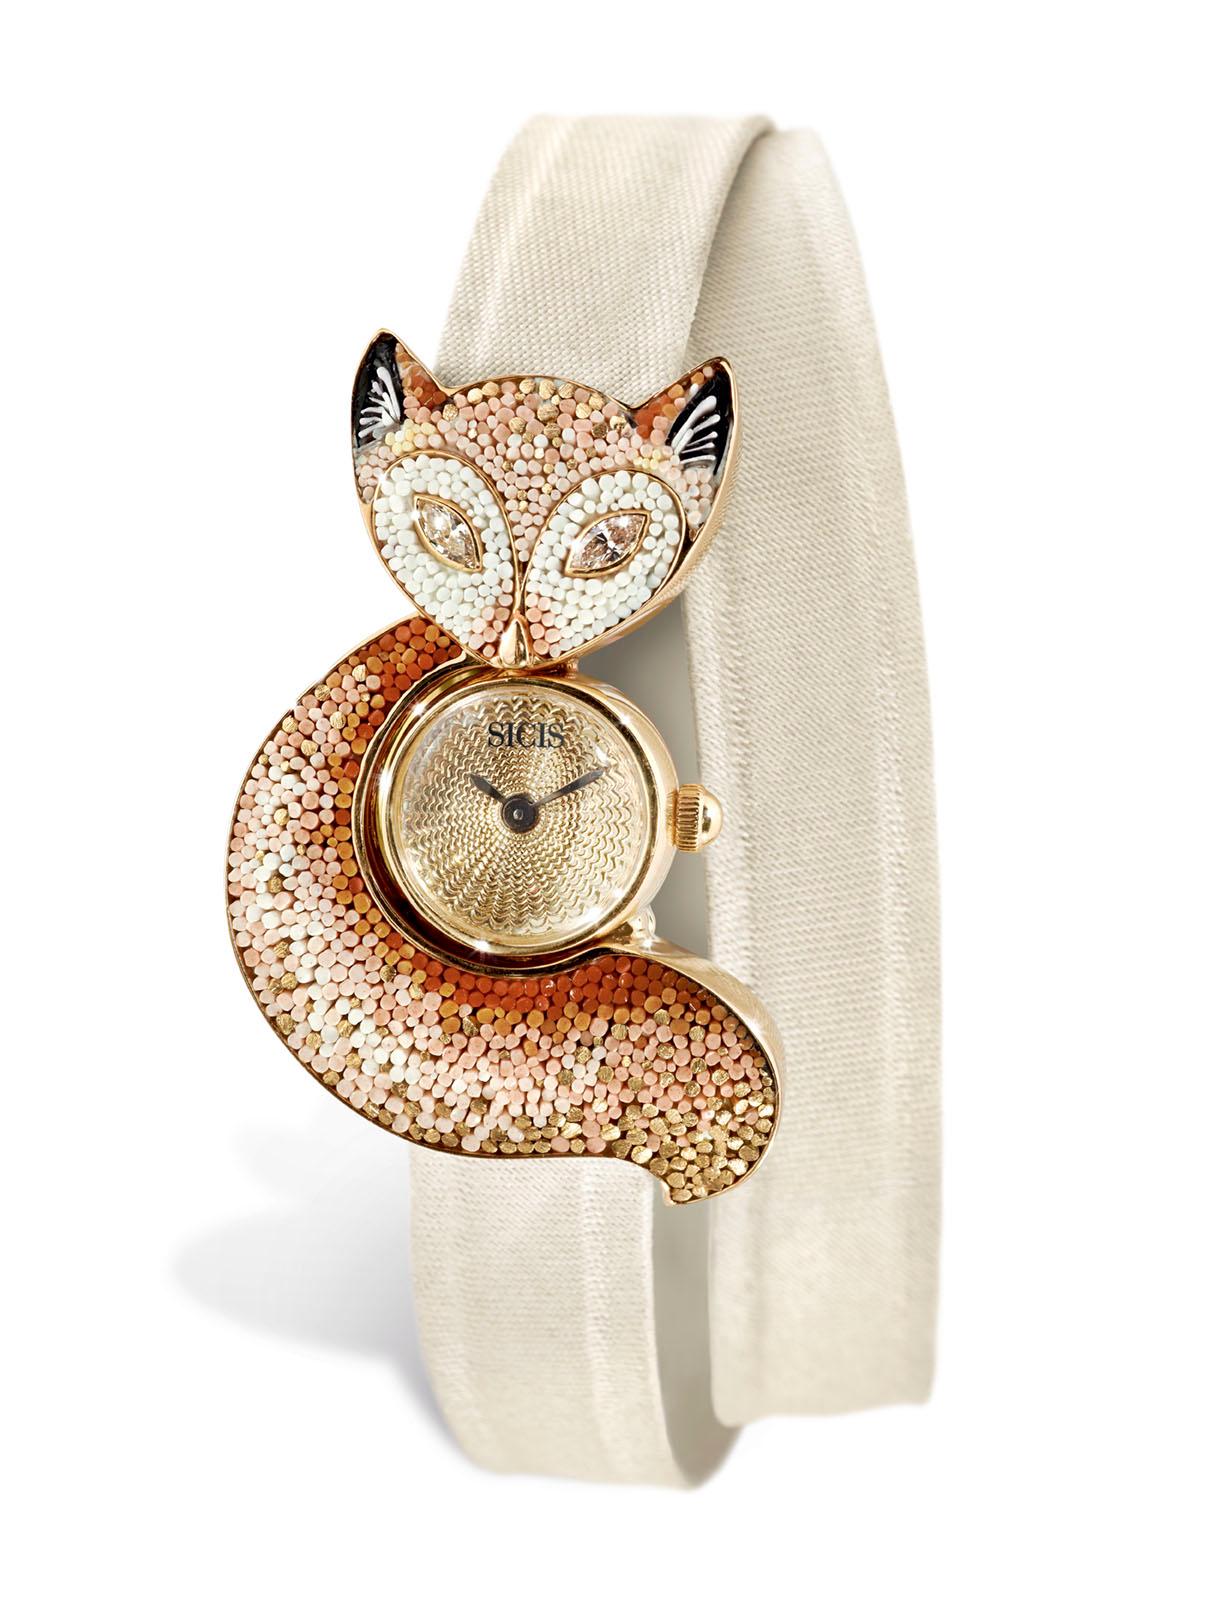 Stilvolle Uhr, Gelbgold, weiße Diamanten, Guilloche-Zifferblatt, handdekoriert, Nanomosaik (Marquiseschliff) im Angebot